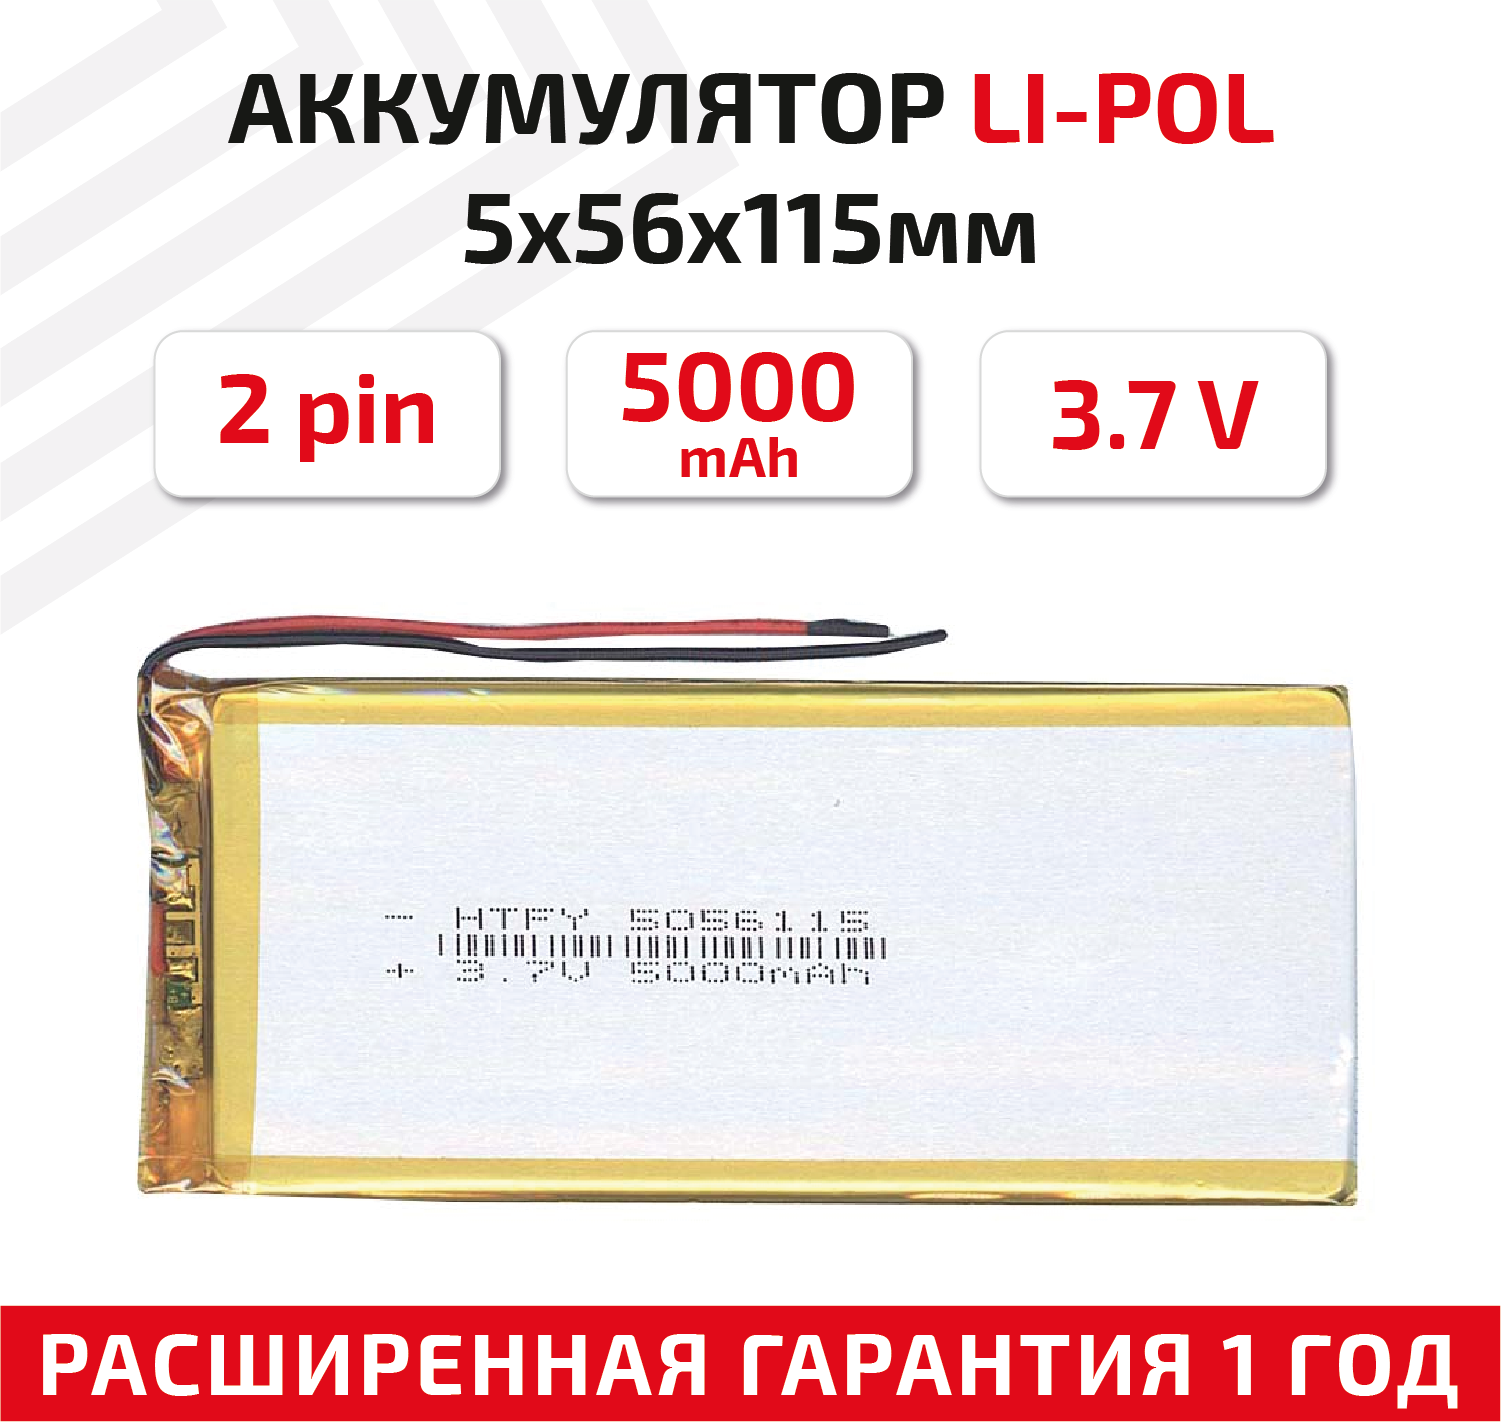 Универсальный аккумулятор (АКБ) для планшета, видеорегистратора и др, 5х56х115мм, 5000мАч, 3.7В, Li-Pol, 2pin (на 2 провода)